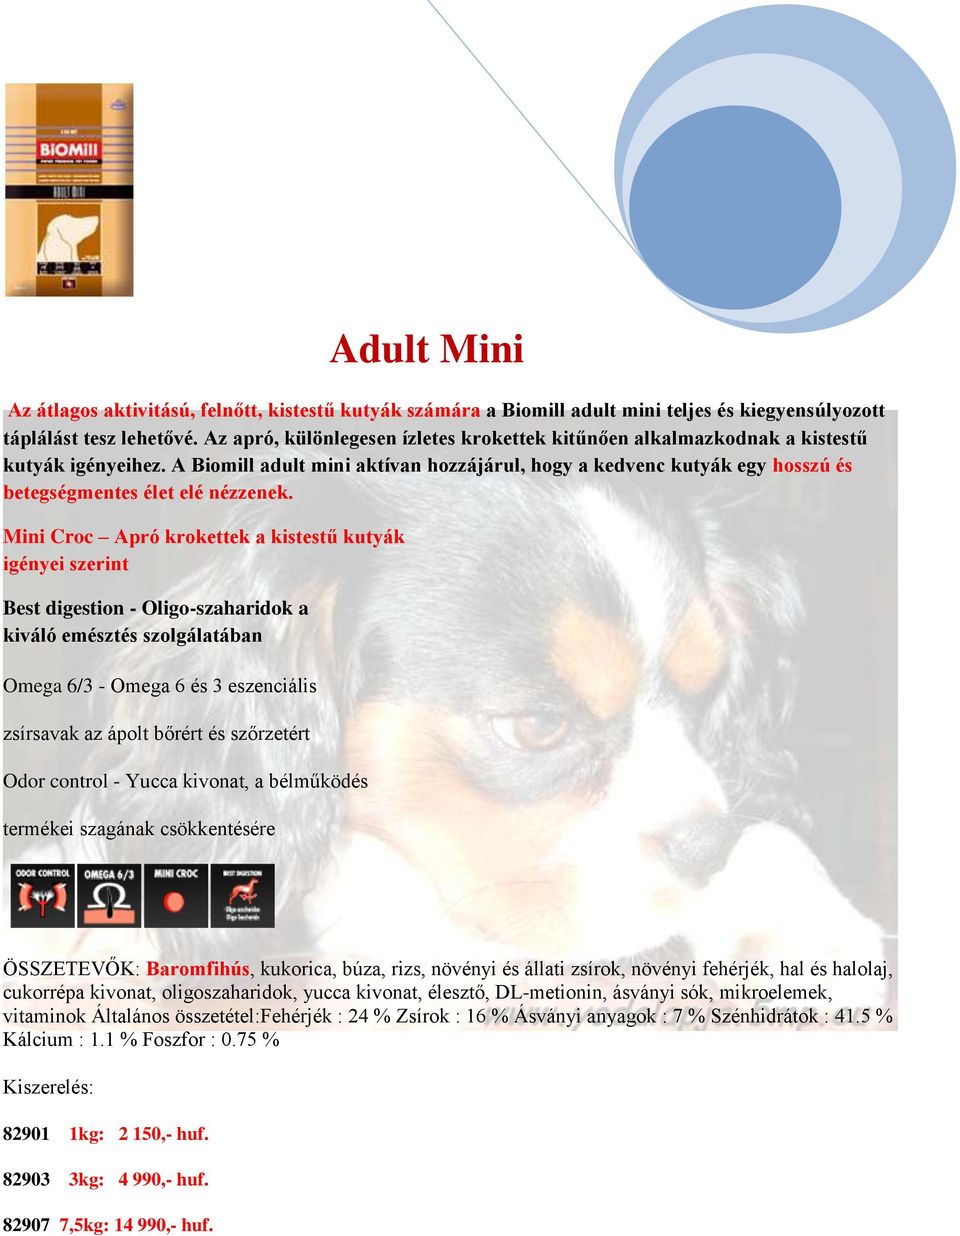 A Biomill adult mini aktívan hozzájárul, hogy a kedvenc kutyák egy hosszú és betegségmentes élet elé nézzenek.